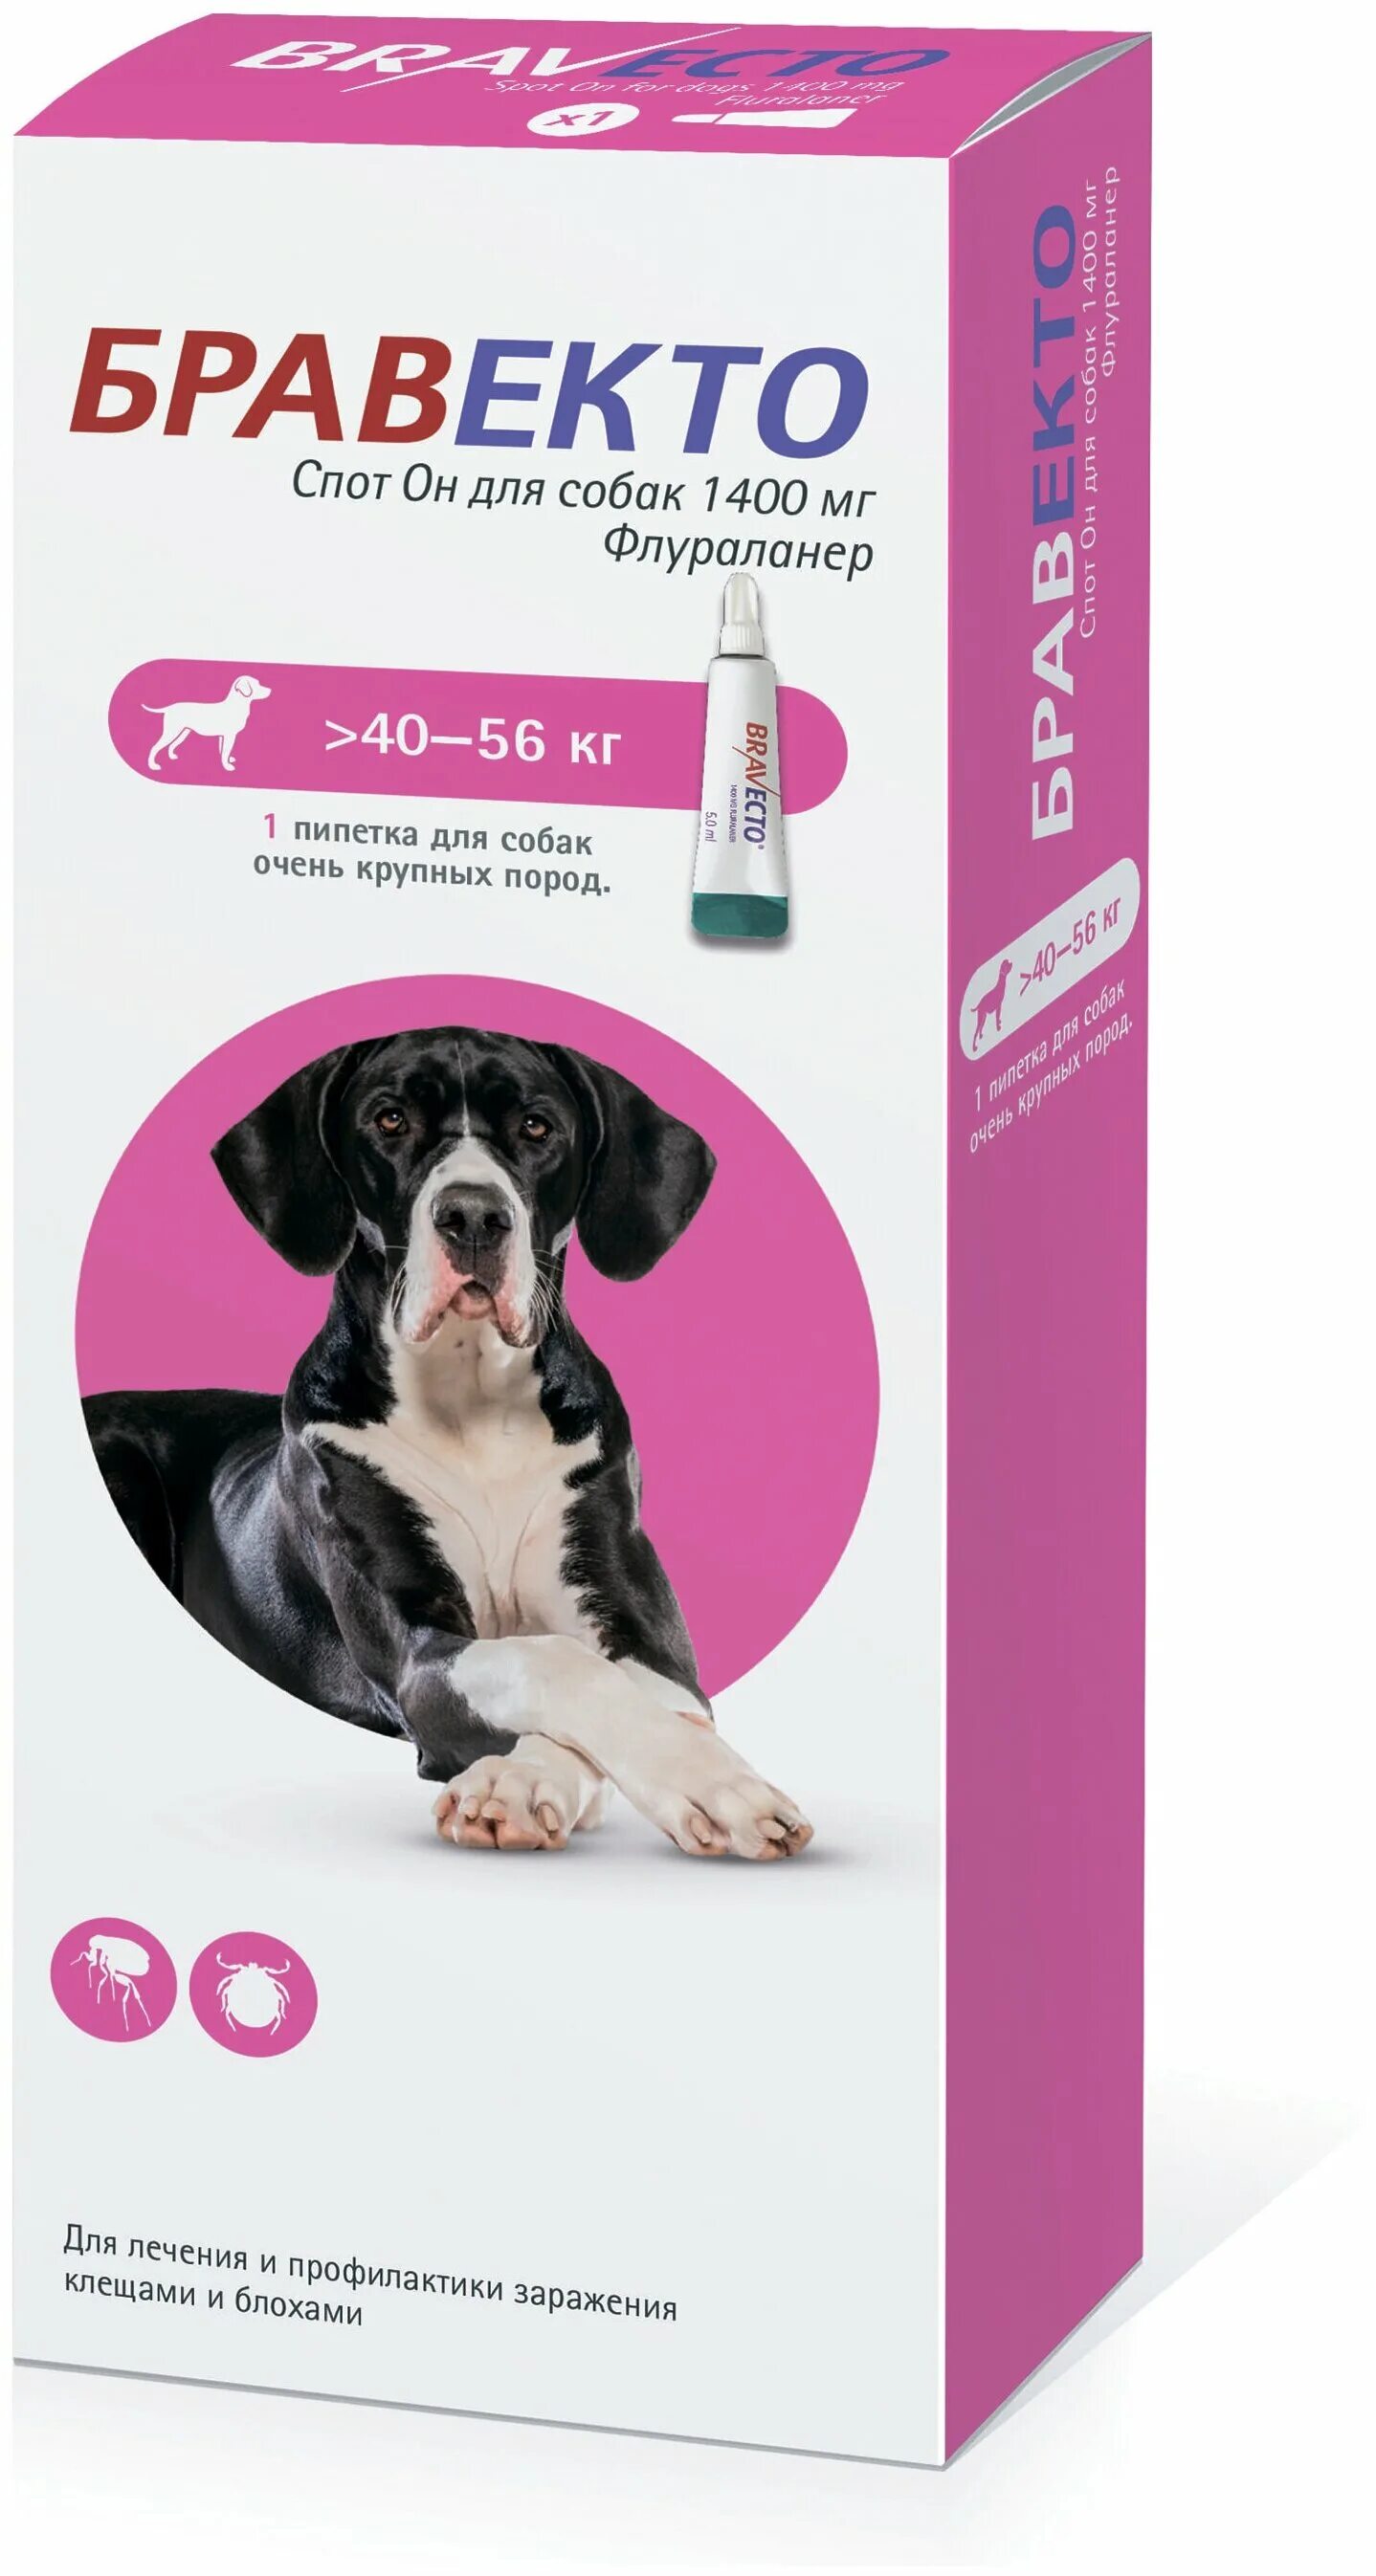 Бравекто таблетка для собак 40 56 купить. Бравекто спот он для собак (1400 мг) 40-56 кг. Бравекто (MSD animal Health) капли от блох и клещей спот он для собак 4,5-10 кг. Бравекто для собак 10-20 капли. Бравекто для собак 1400 мг 40-56.